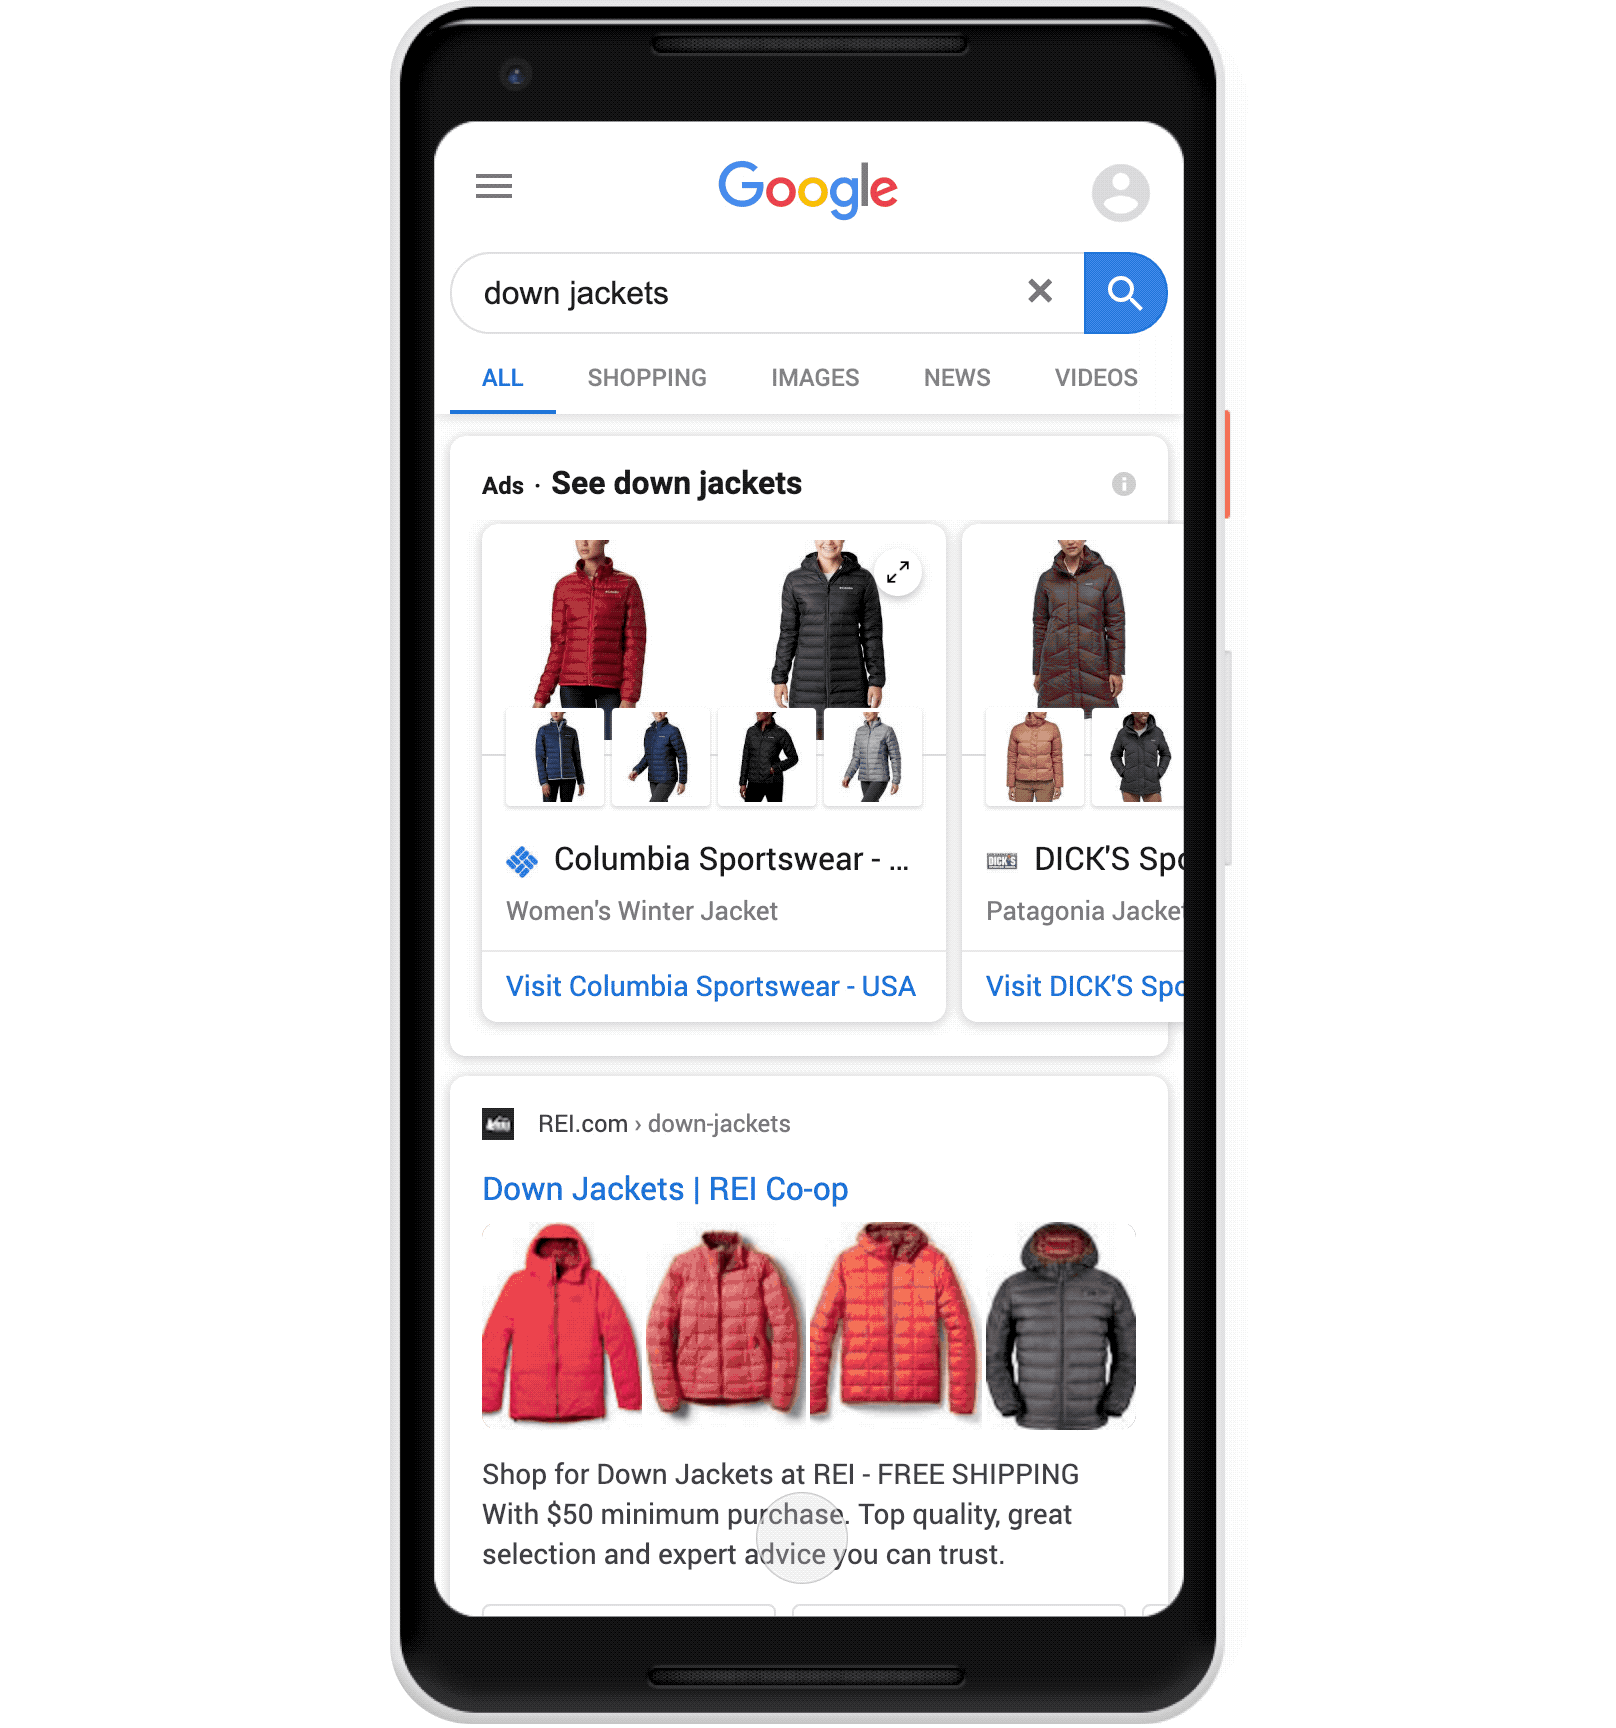 Carrusel de productos de Google para chaquetas de hombre en resultados orgánicos